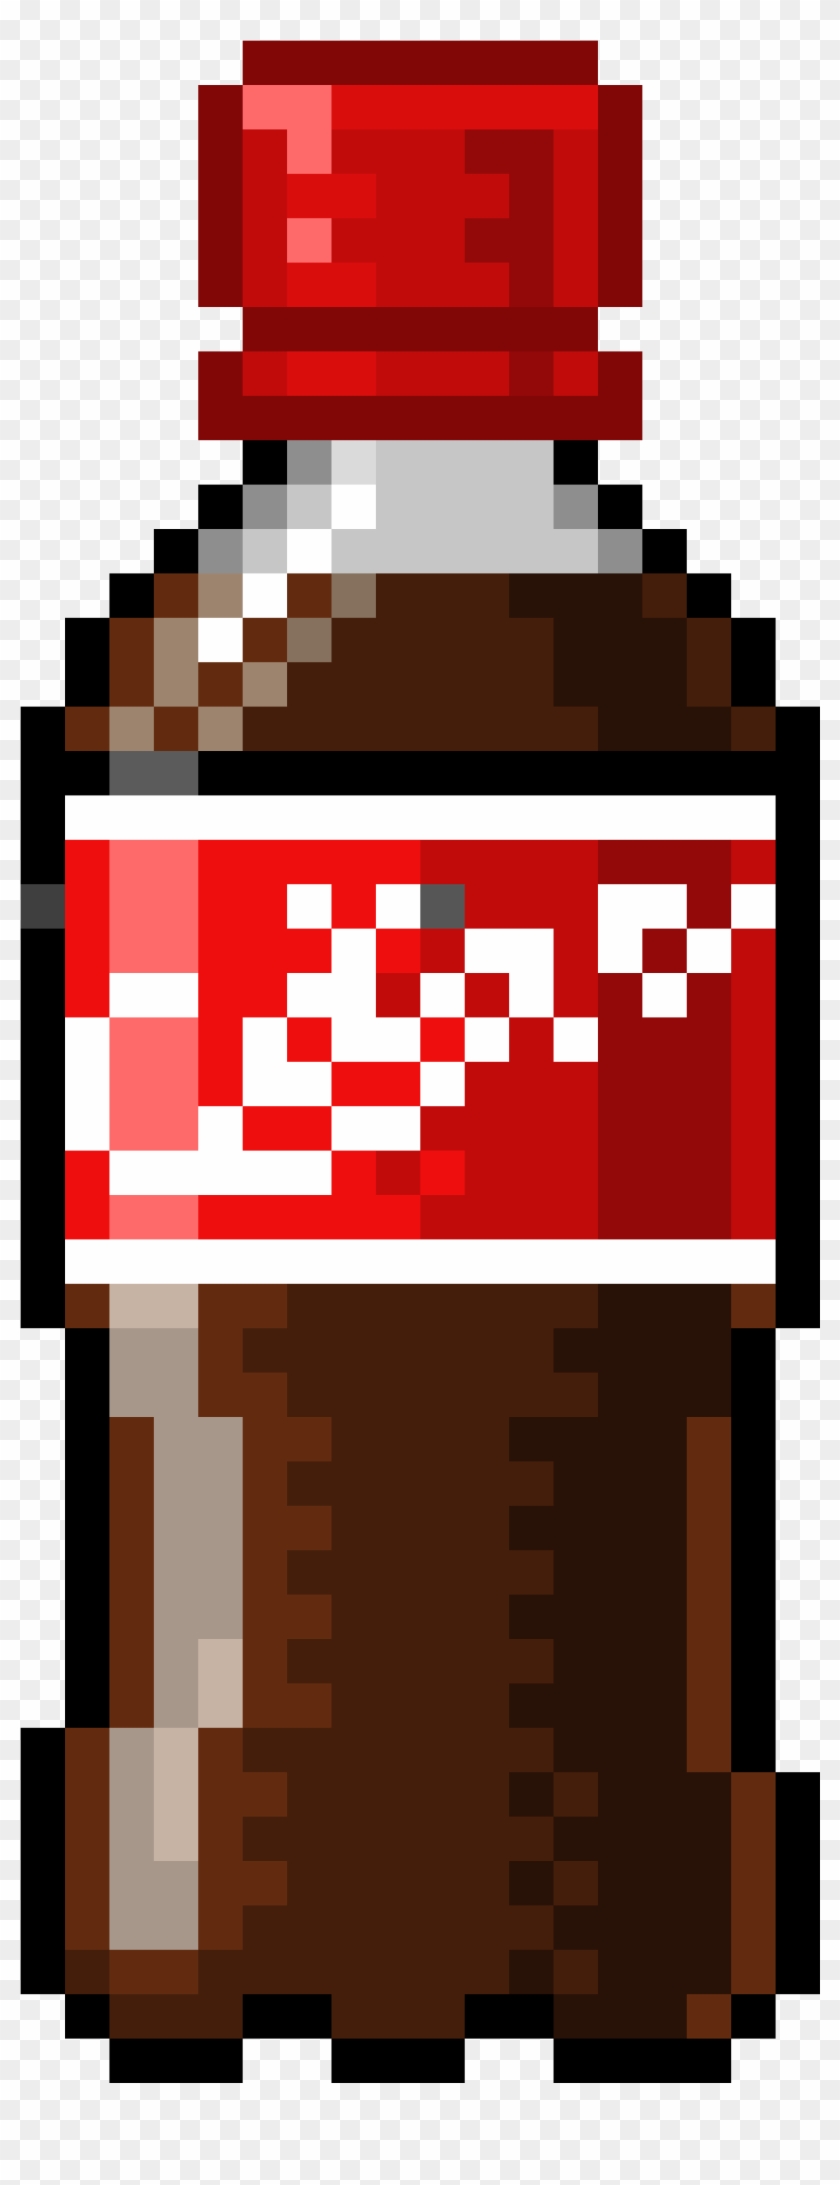 Coke Bottle - Plastic Bottle Pixel Art Clipart #3091418